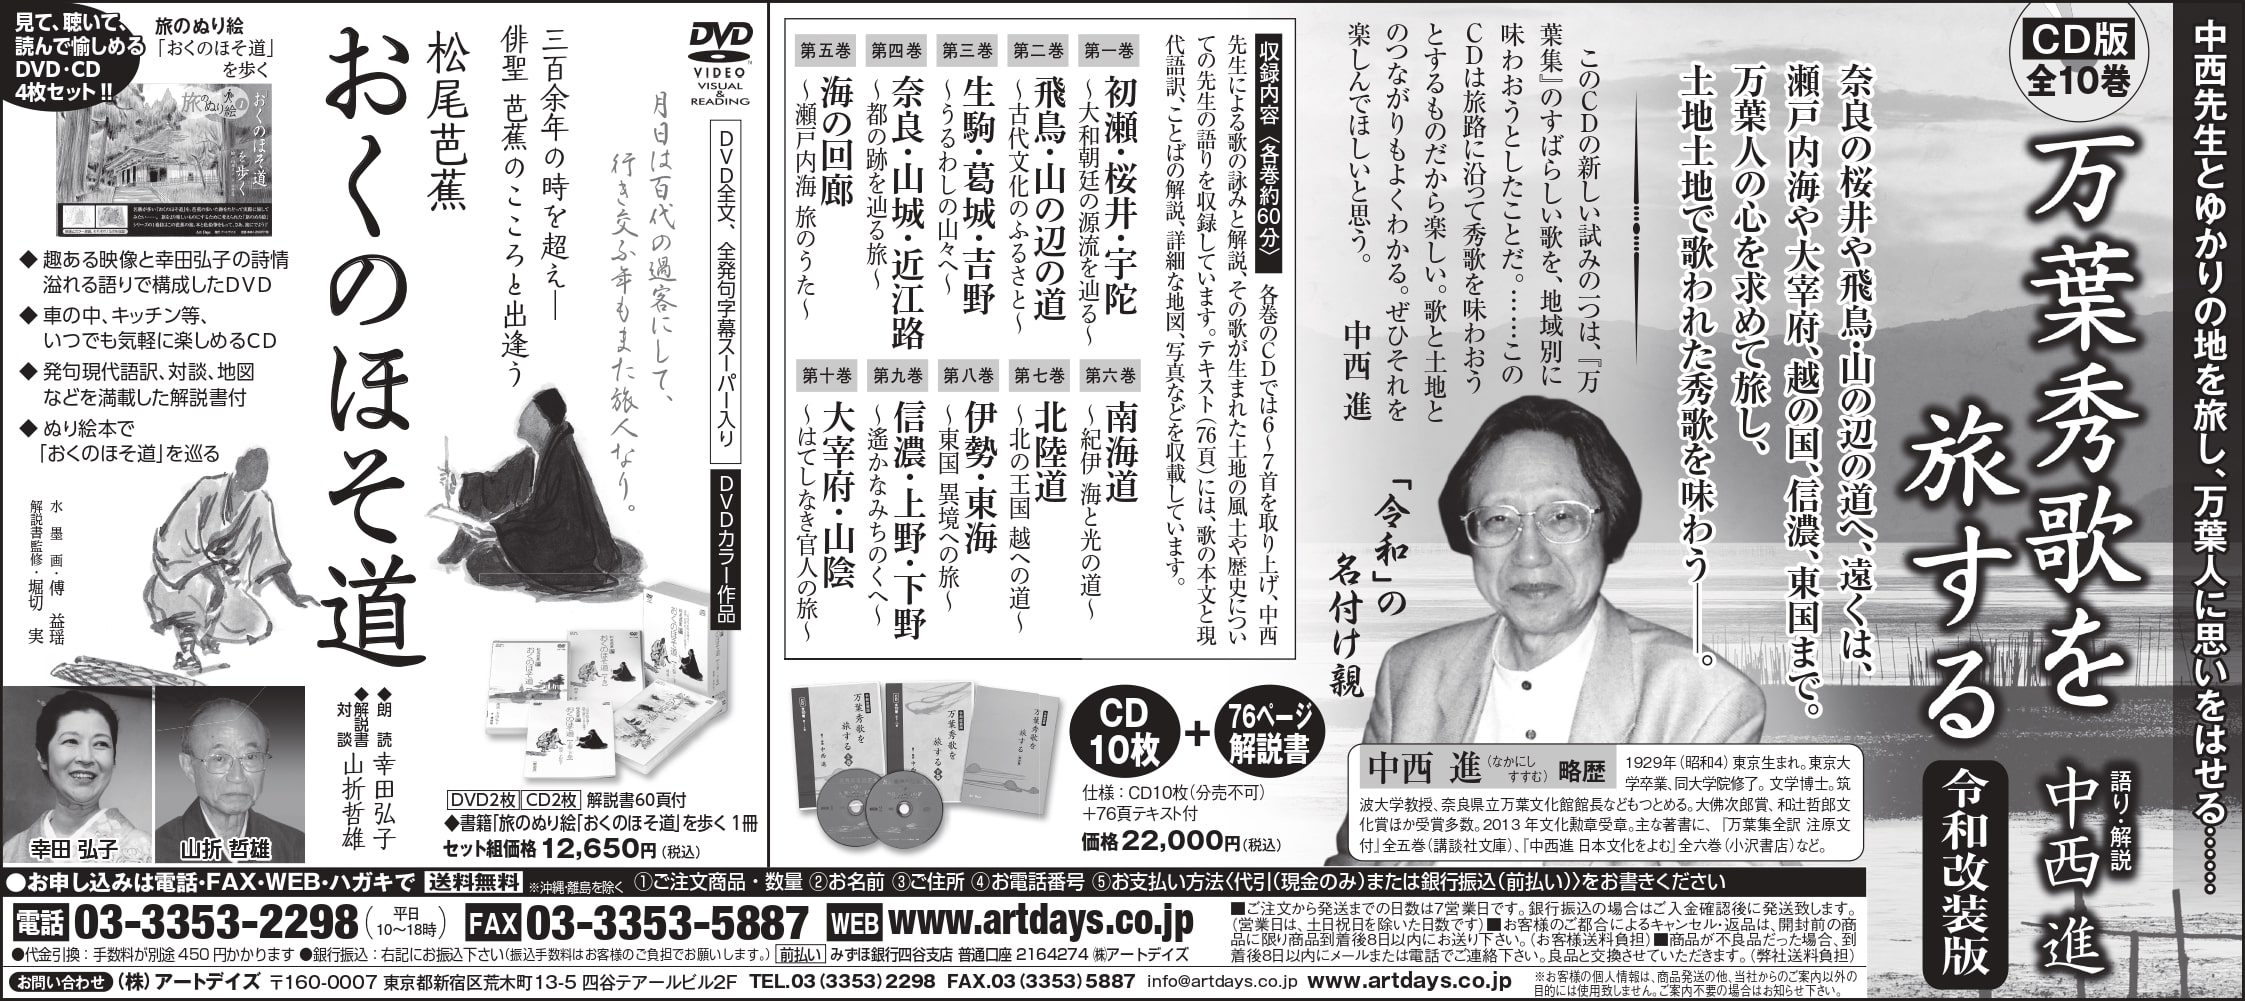 8月2日日本経済新聞（朝刊）に中西進先生のCD集「万葉秀歌を旅する」の広告を掲載しました。